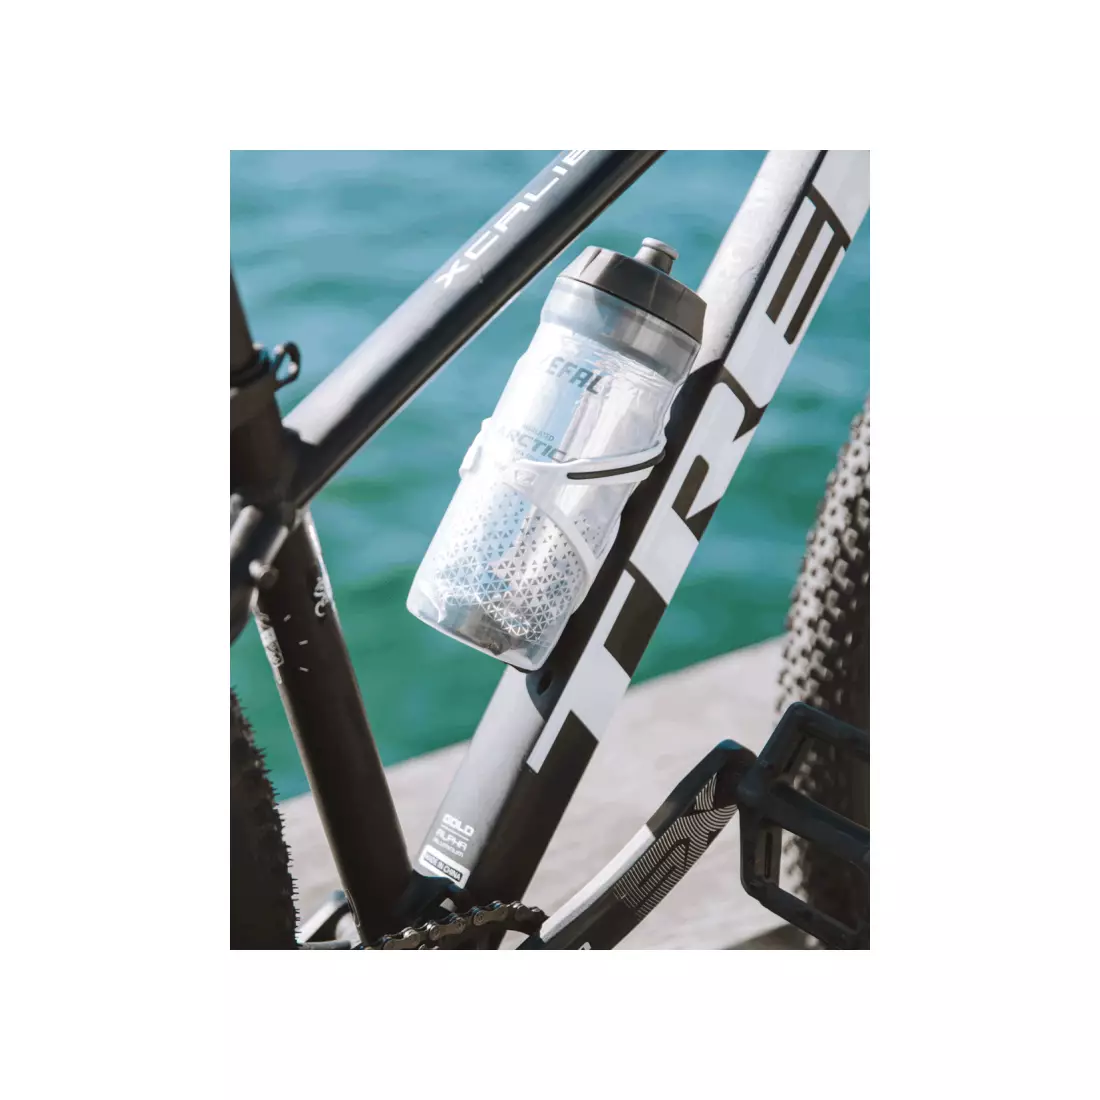 ZEFAL rowerowy bidon termiczny ARCTICA 55 silver/black 0,55L ZF-1660